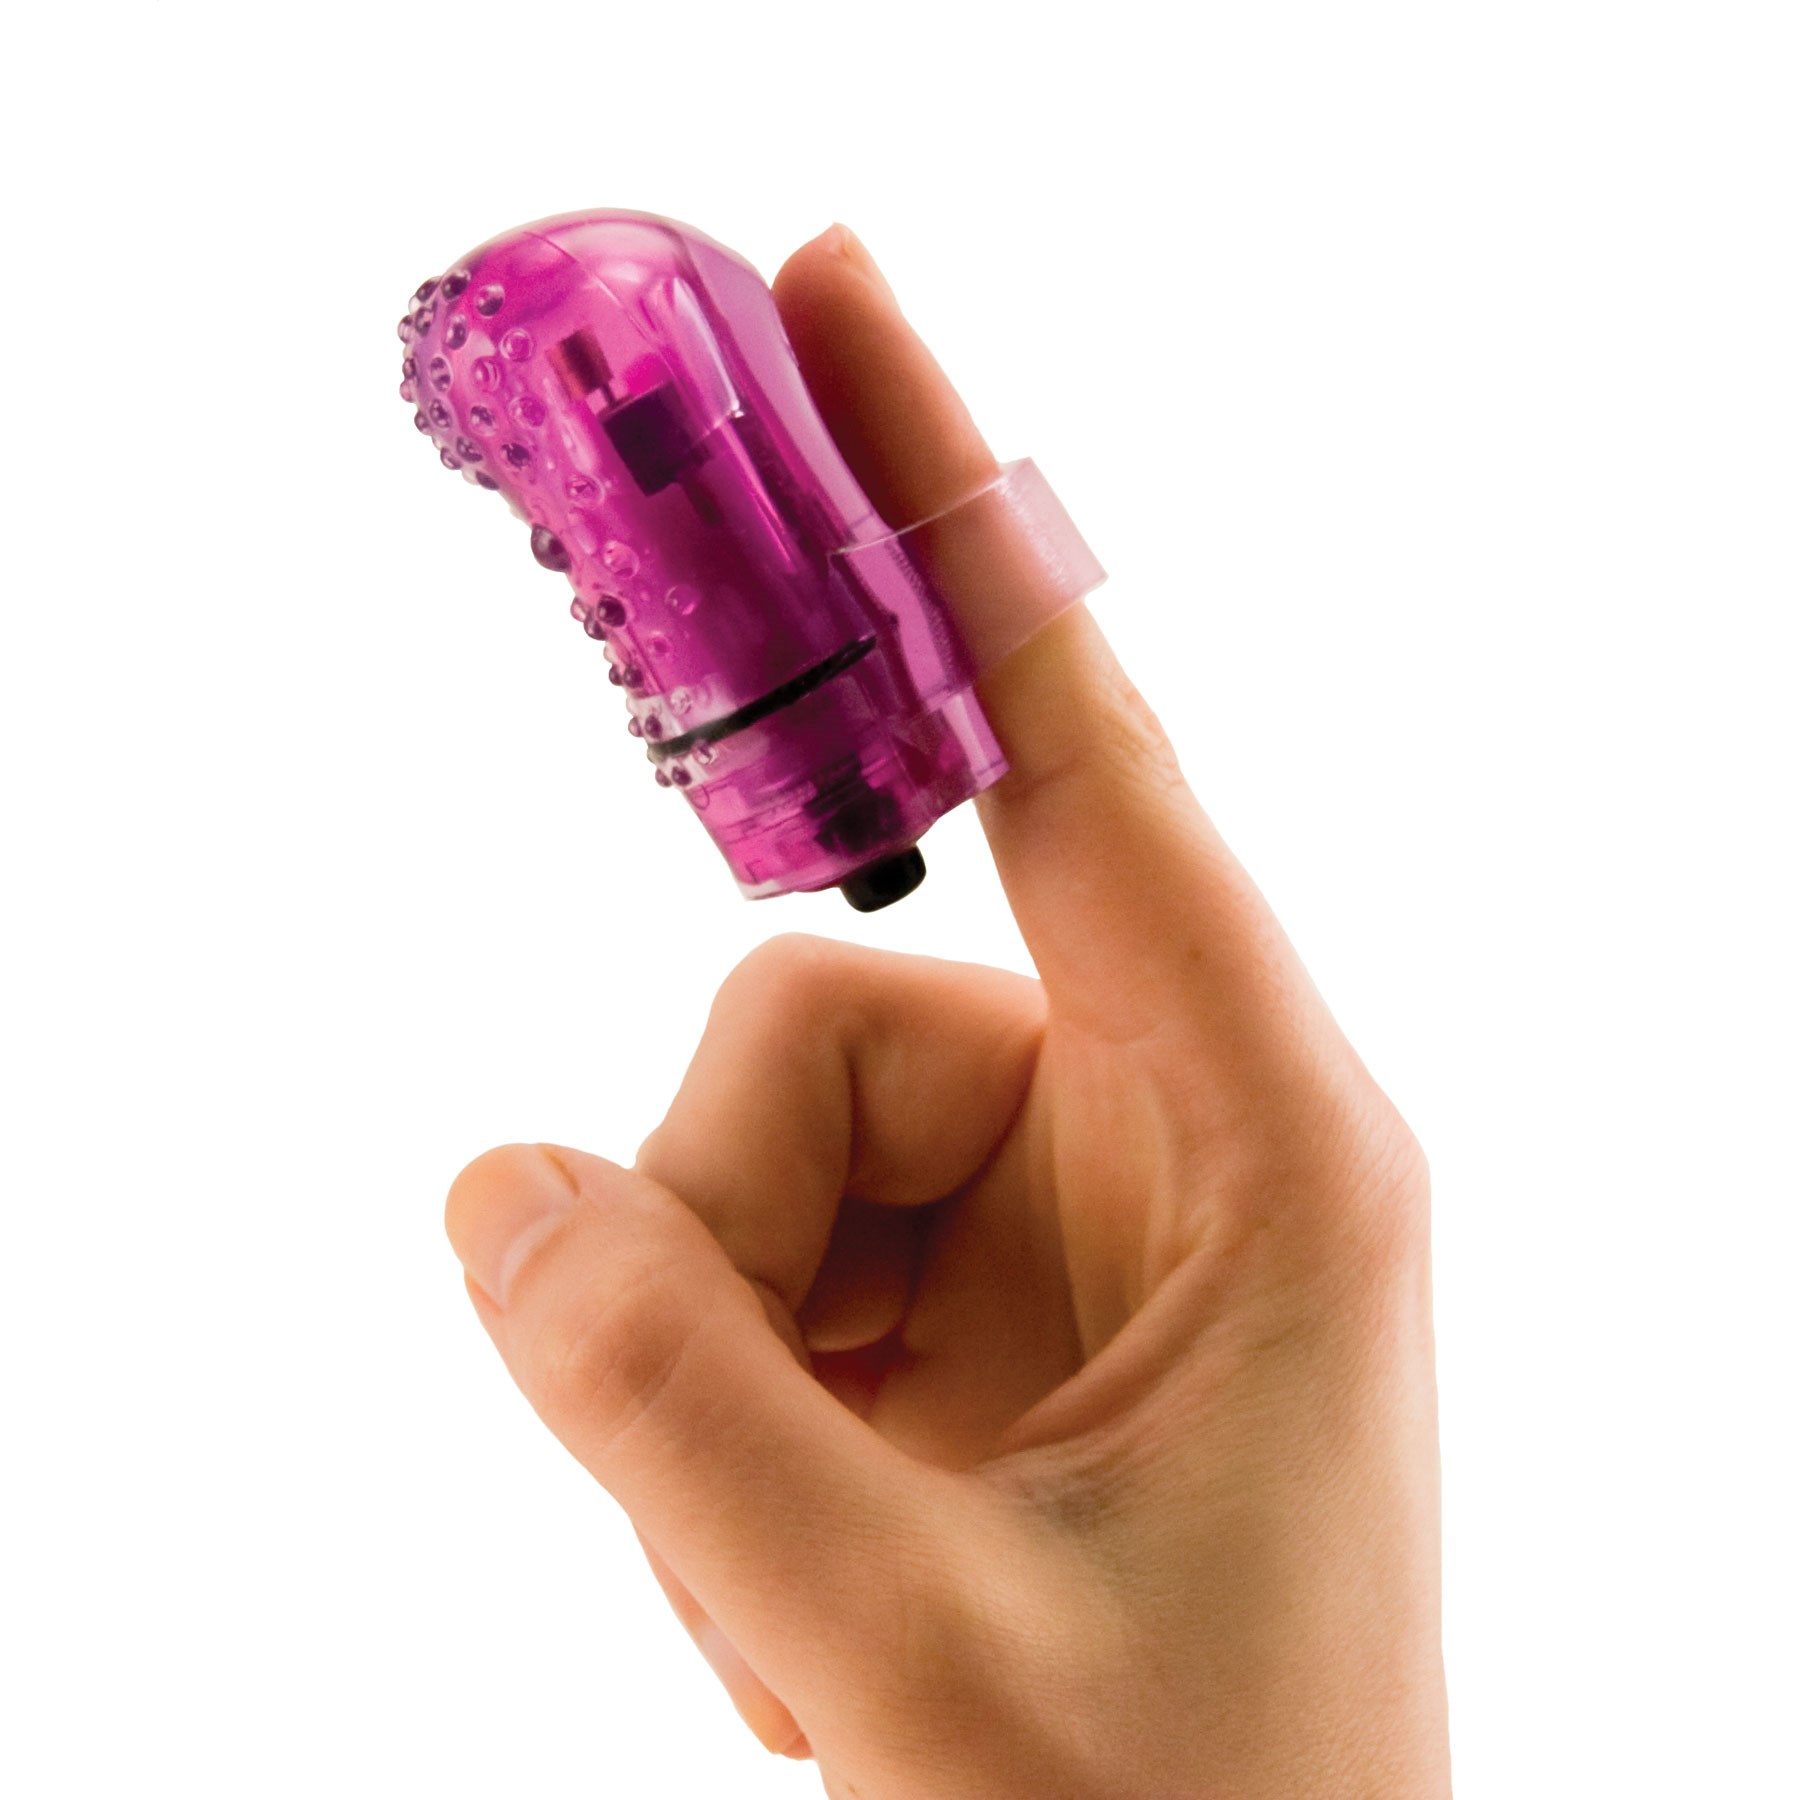 Fingo Nubby Finger Vibrator worn on finger